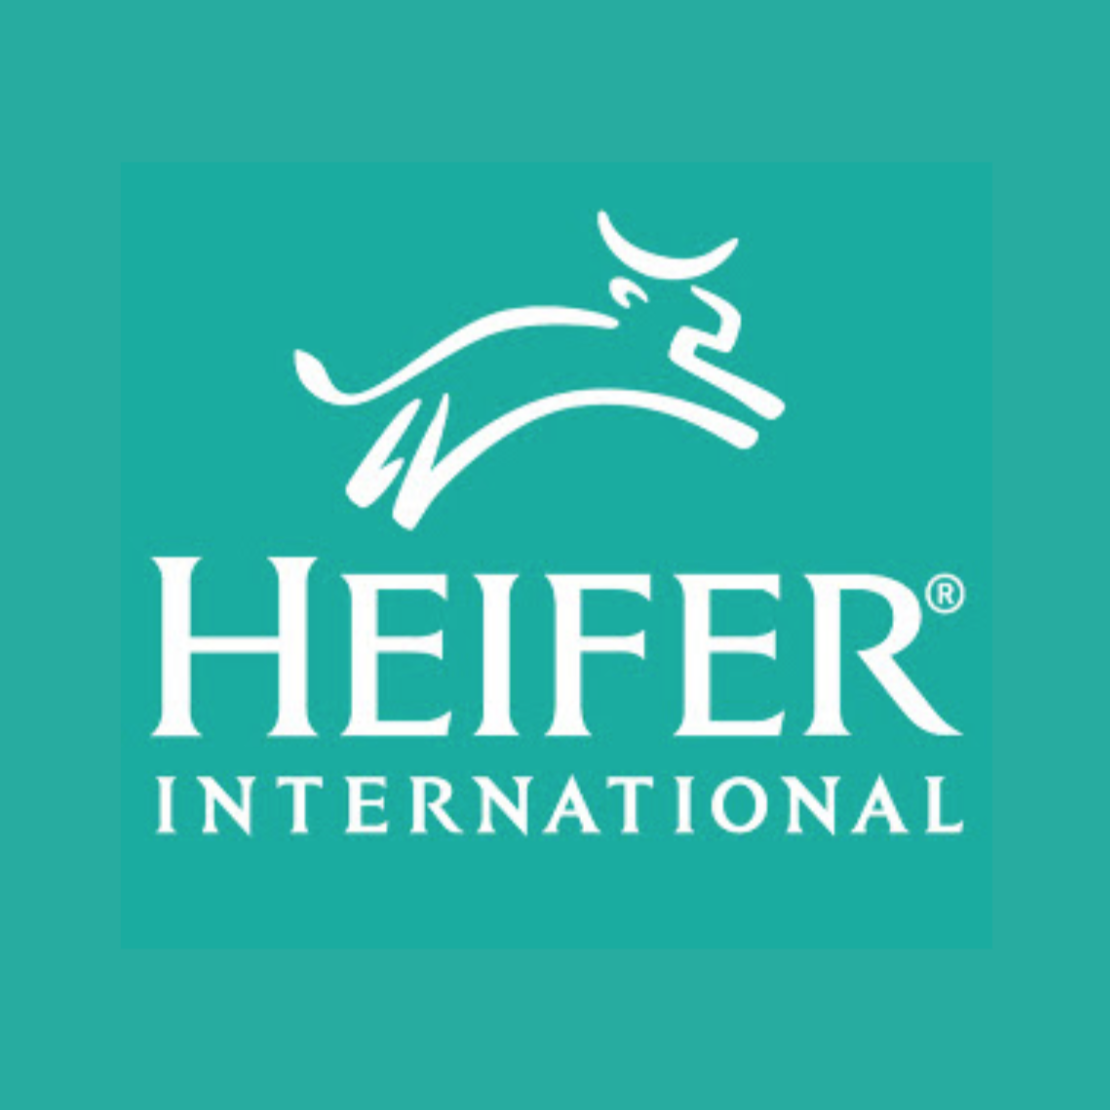 heifer international